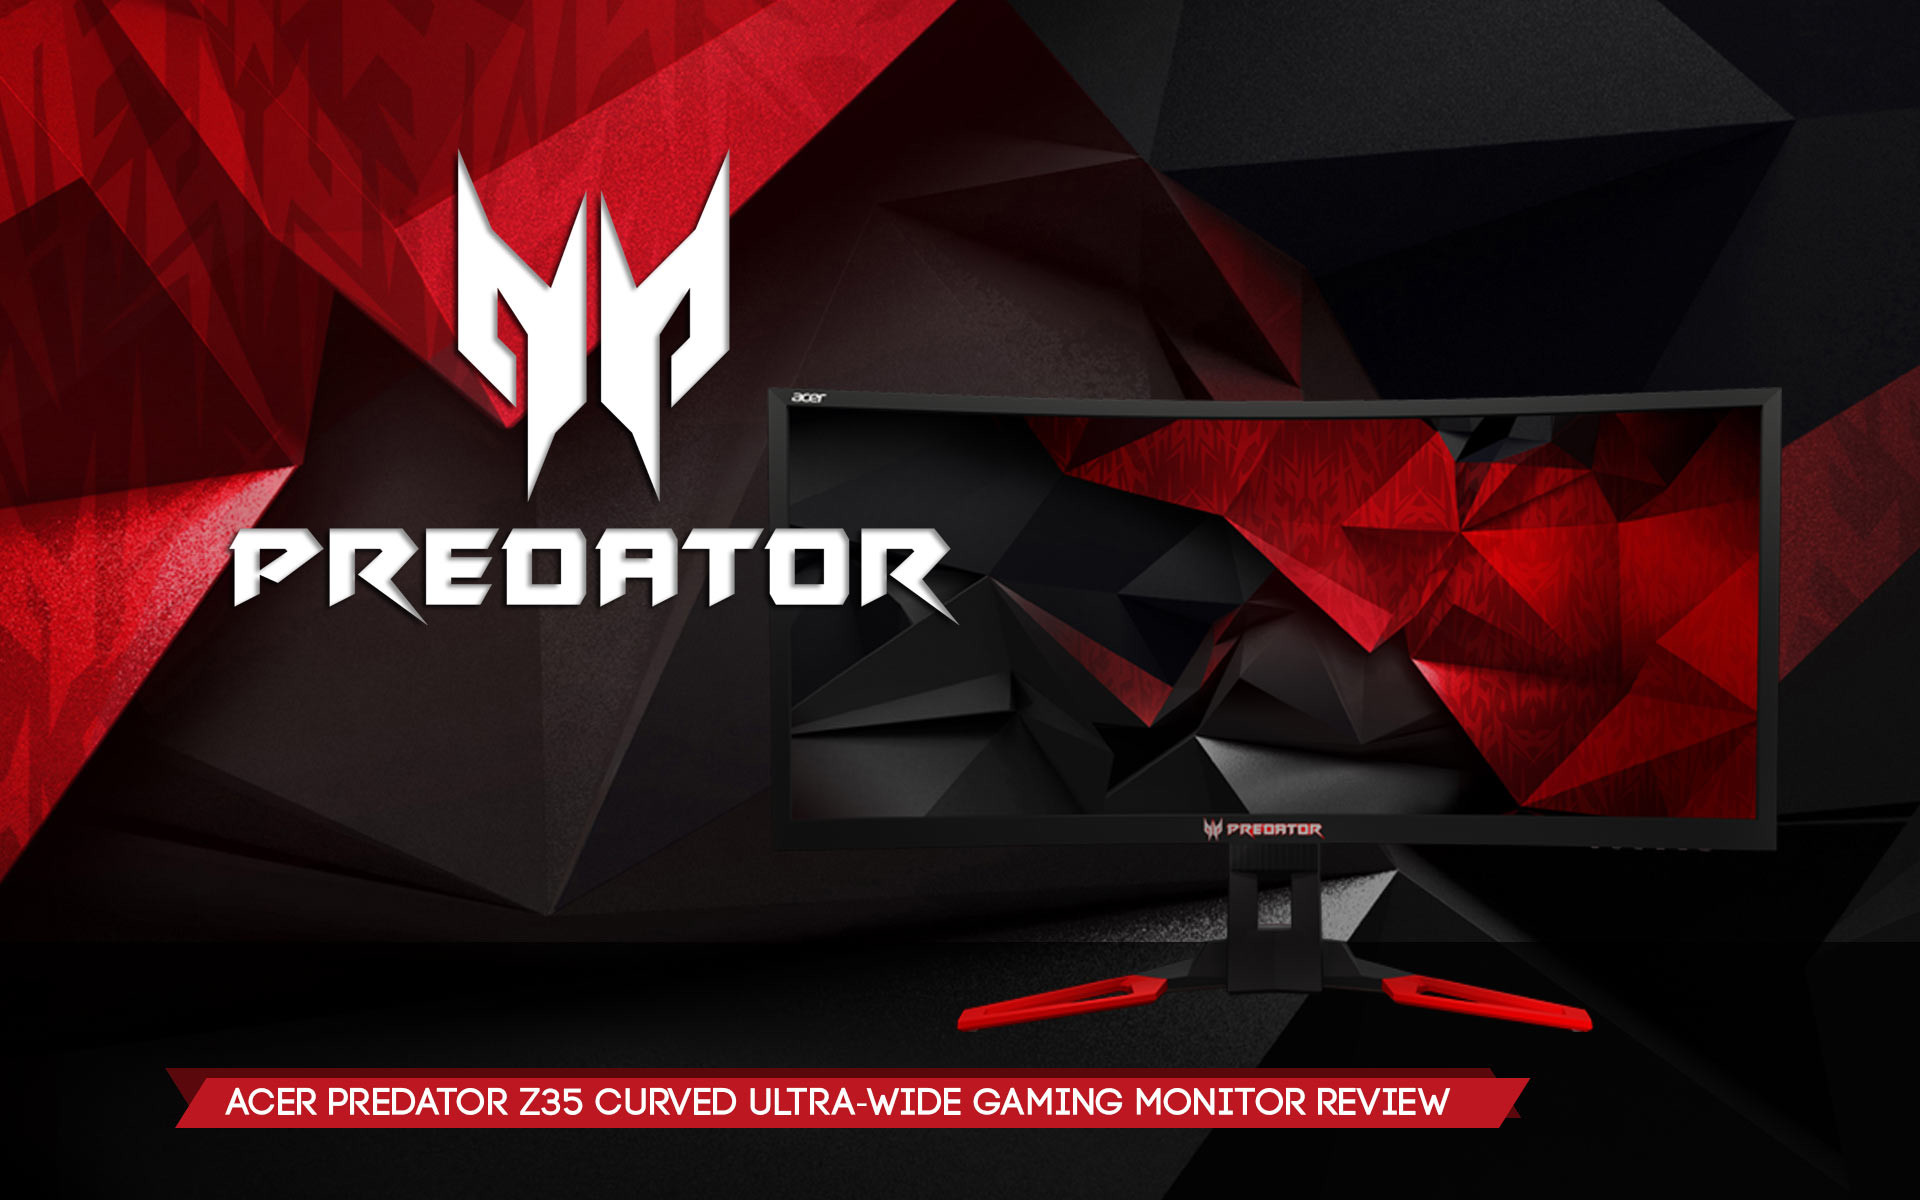 acer predator wallpaper,rojo,producto,diseño gráfico,fuente,gráficos